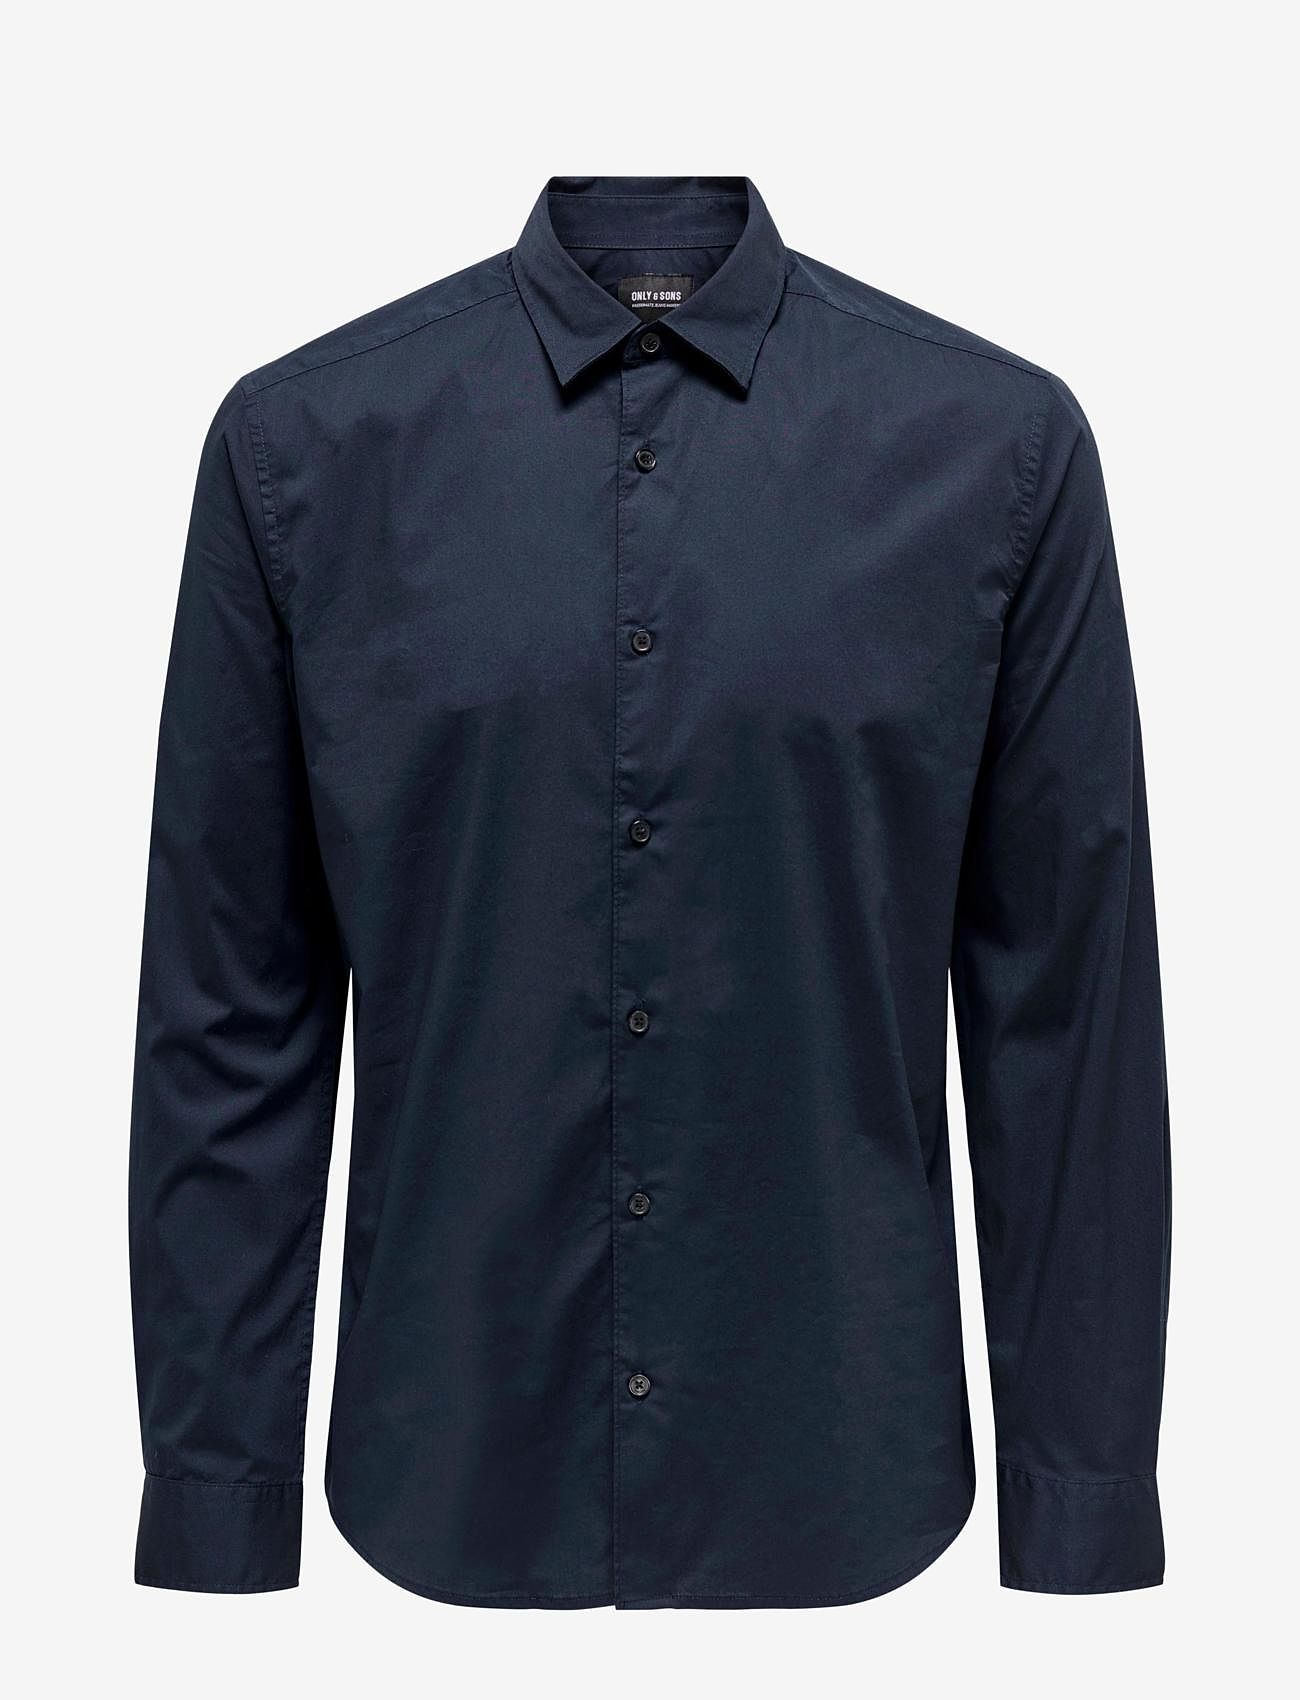 ONLY & SONS - ONSANDY SLIM EASY IRON POPLIN SHIRT NOOS - basic shirts - dark navy - 0